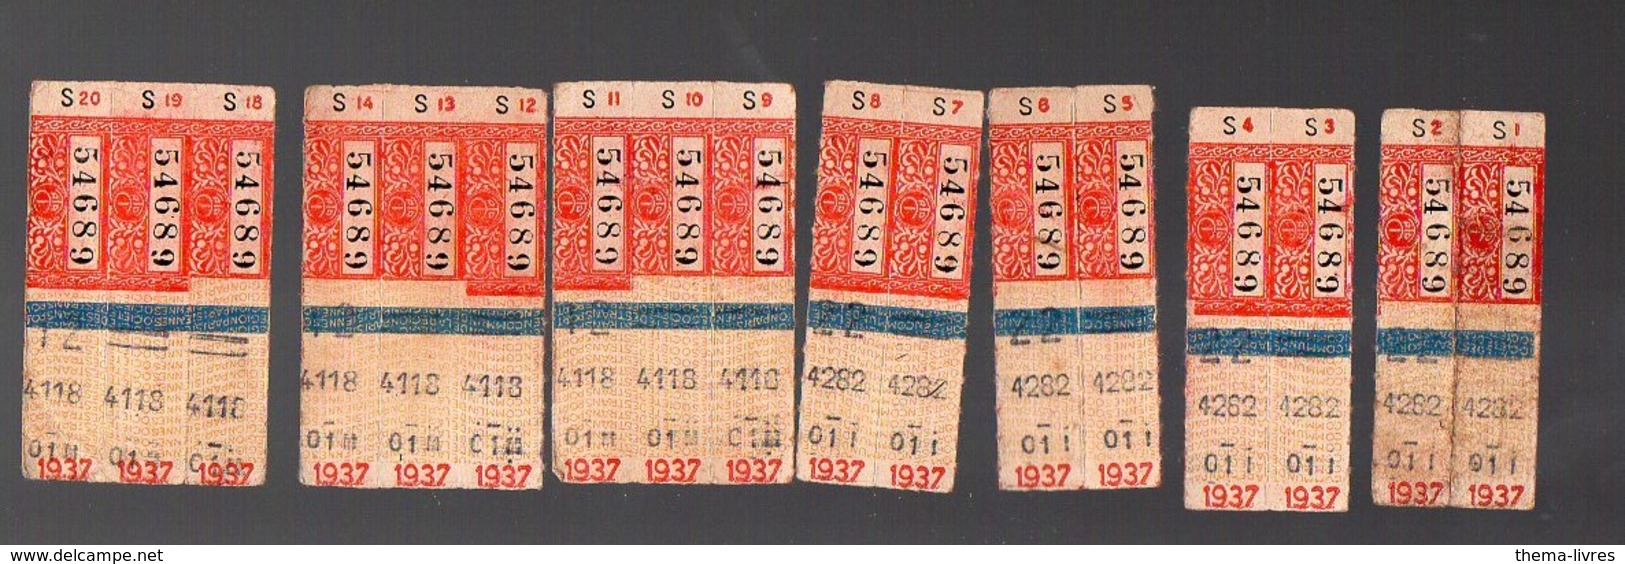 (Paris) Lot De 17 Tickets De Bus (carnet "S" ) 1937 Avec Pub GALERIE BARBES Au Verso  (PPP12590) - Europe